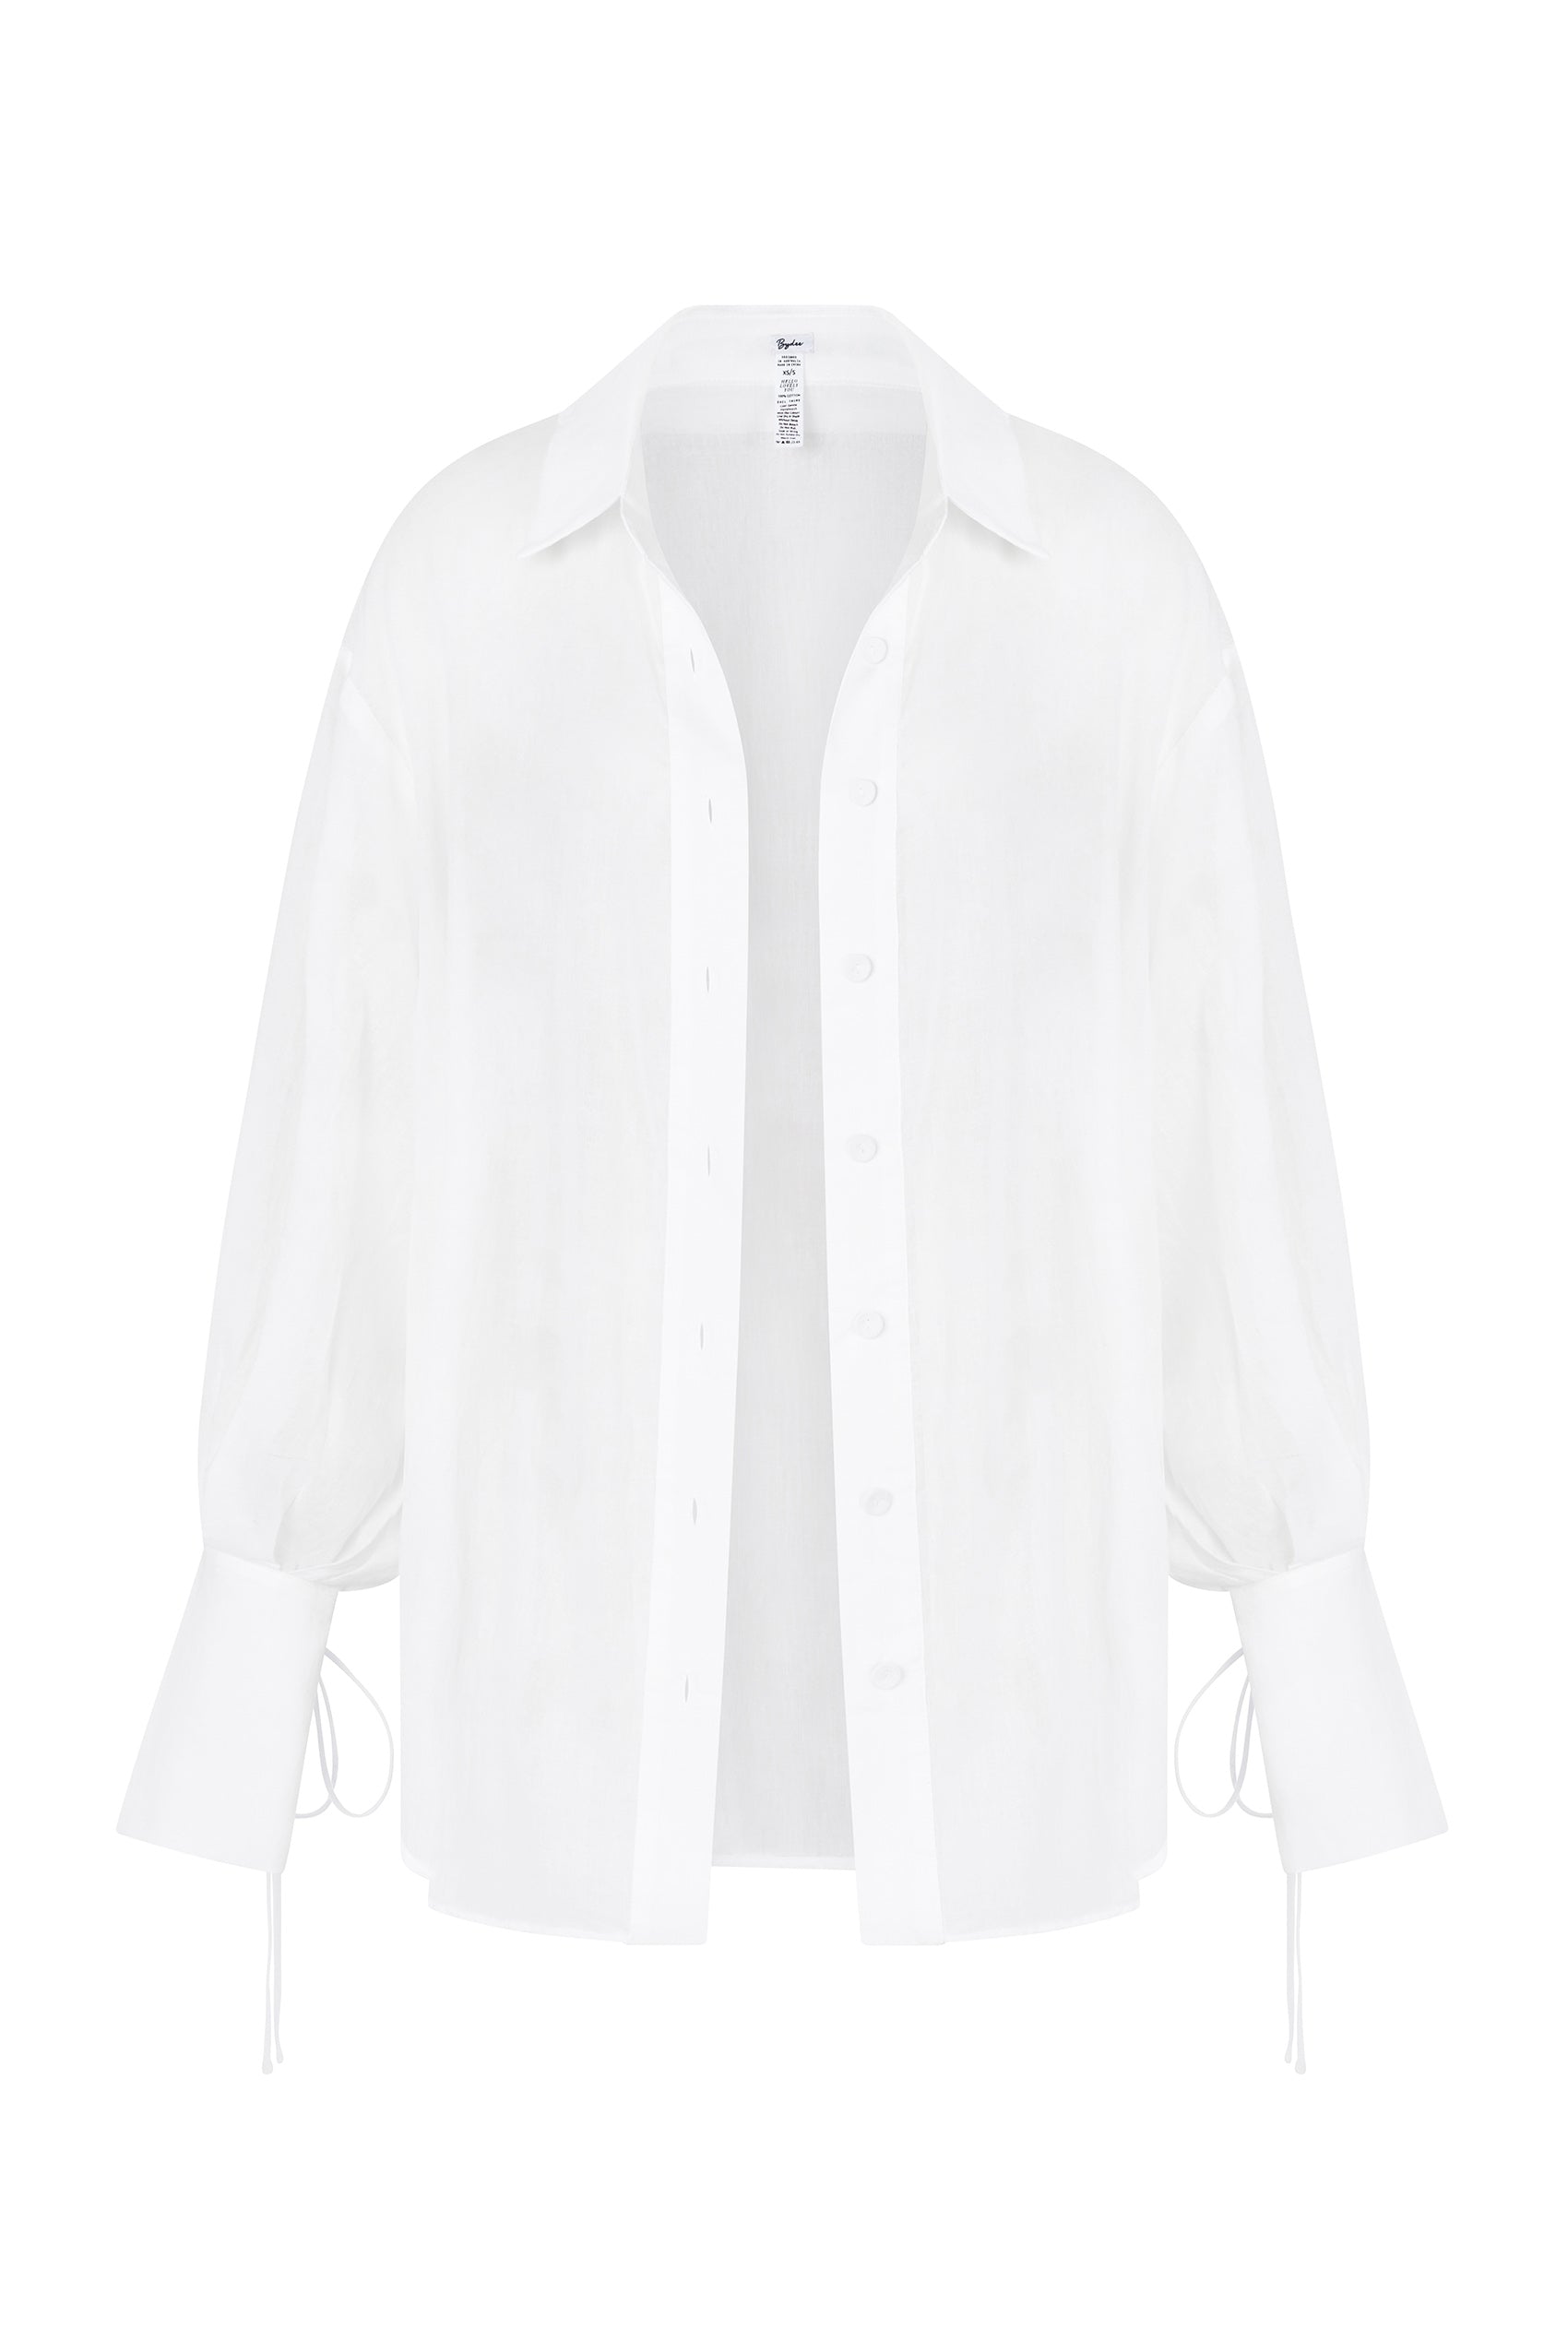 Valetta Cotton Shirt in Blanco